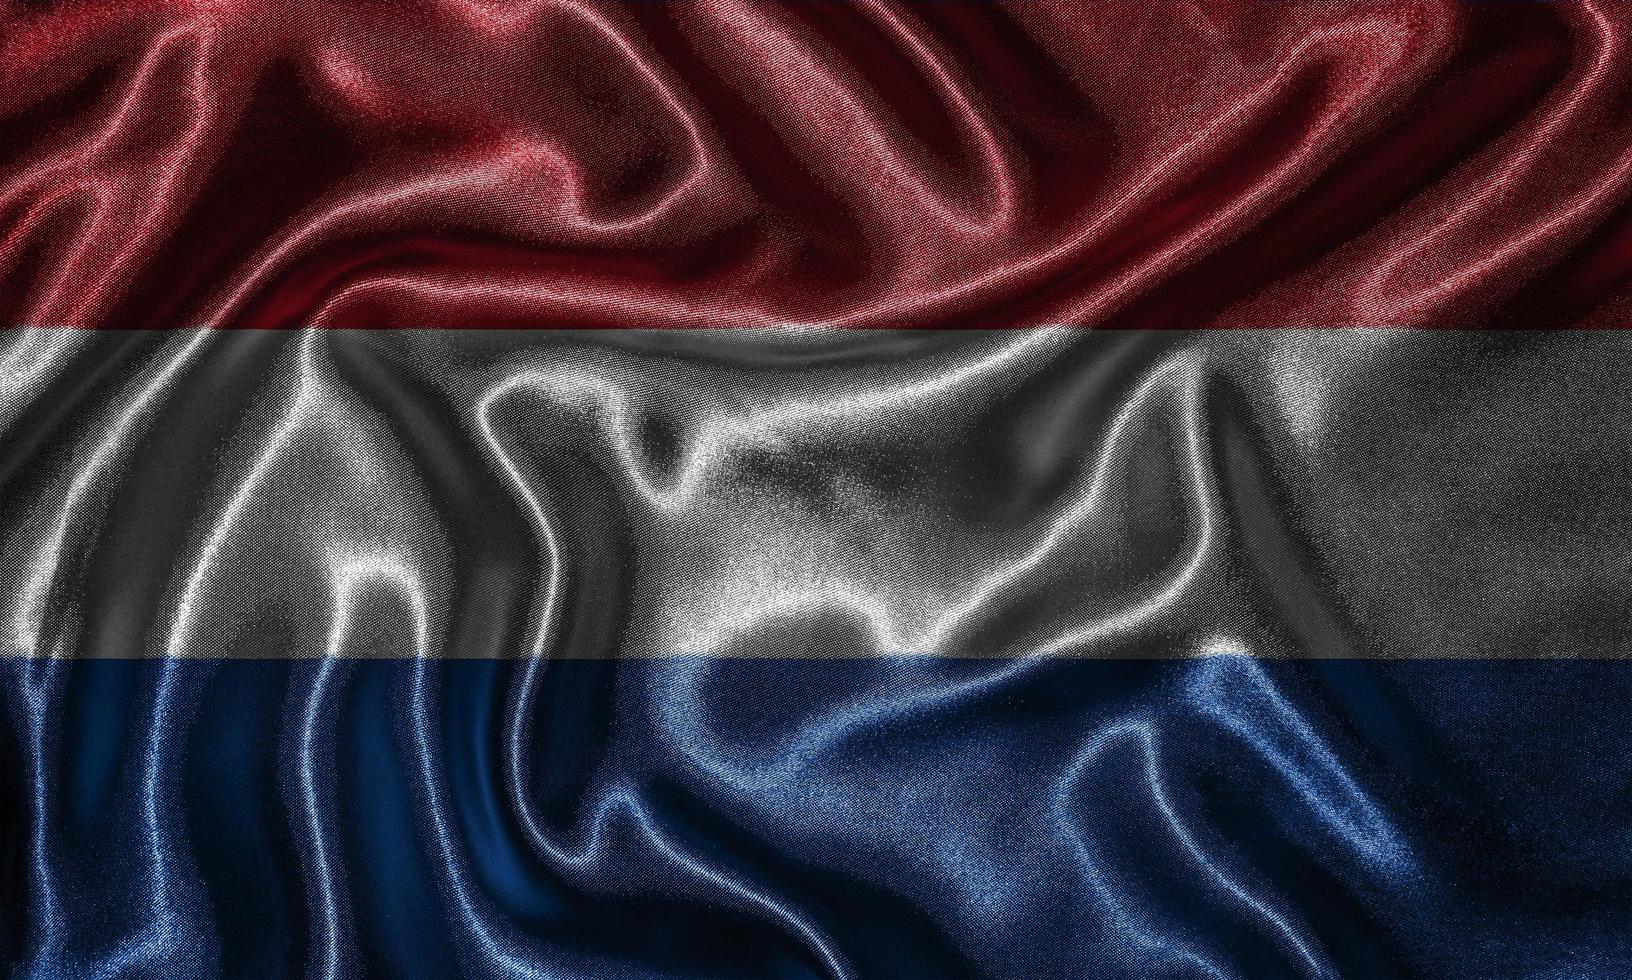 behang met nederlandse vlag en wapperende vlag per stof. foto